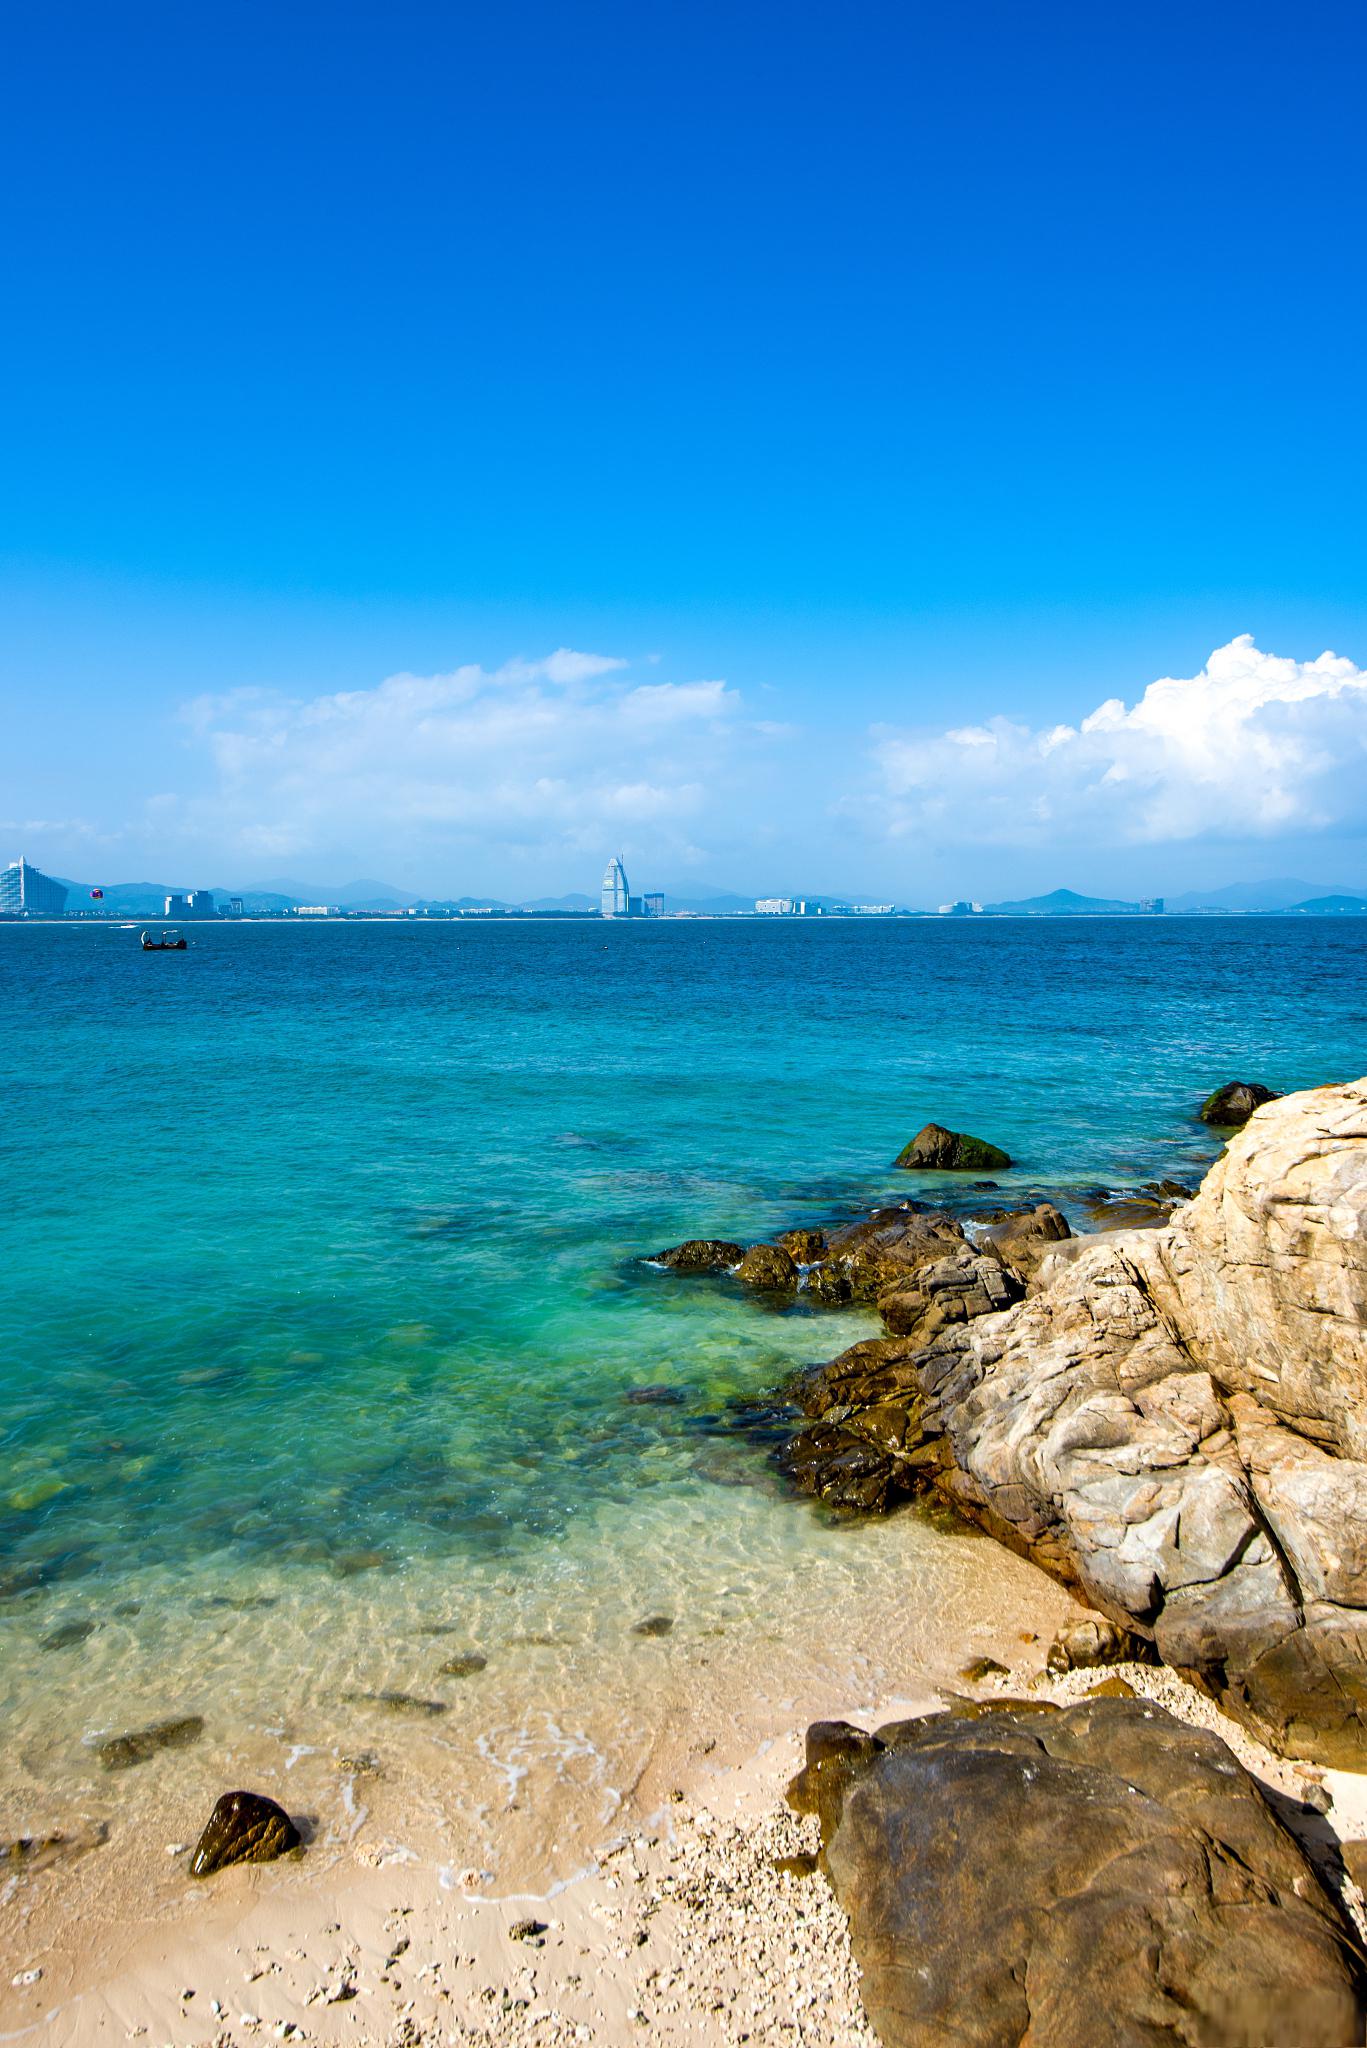 海南陵水,位于海南岛的东南部,是一处充满热带风情和自然美景的旅游